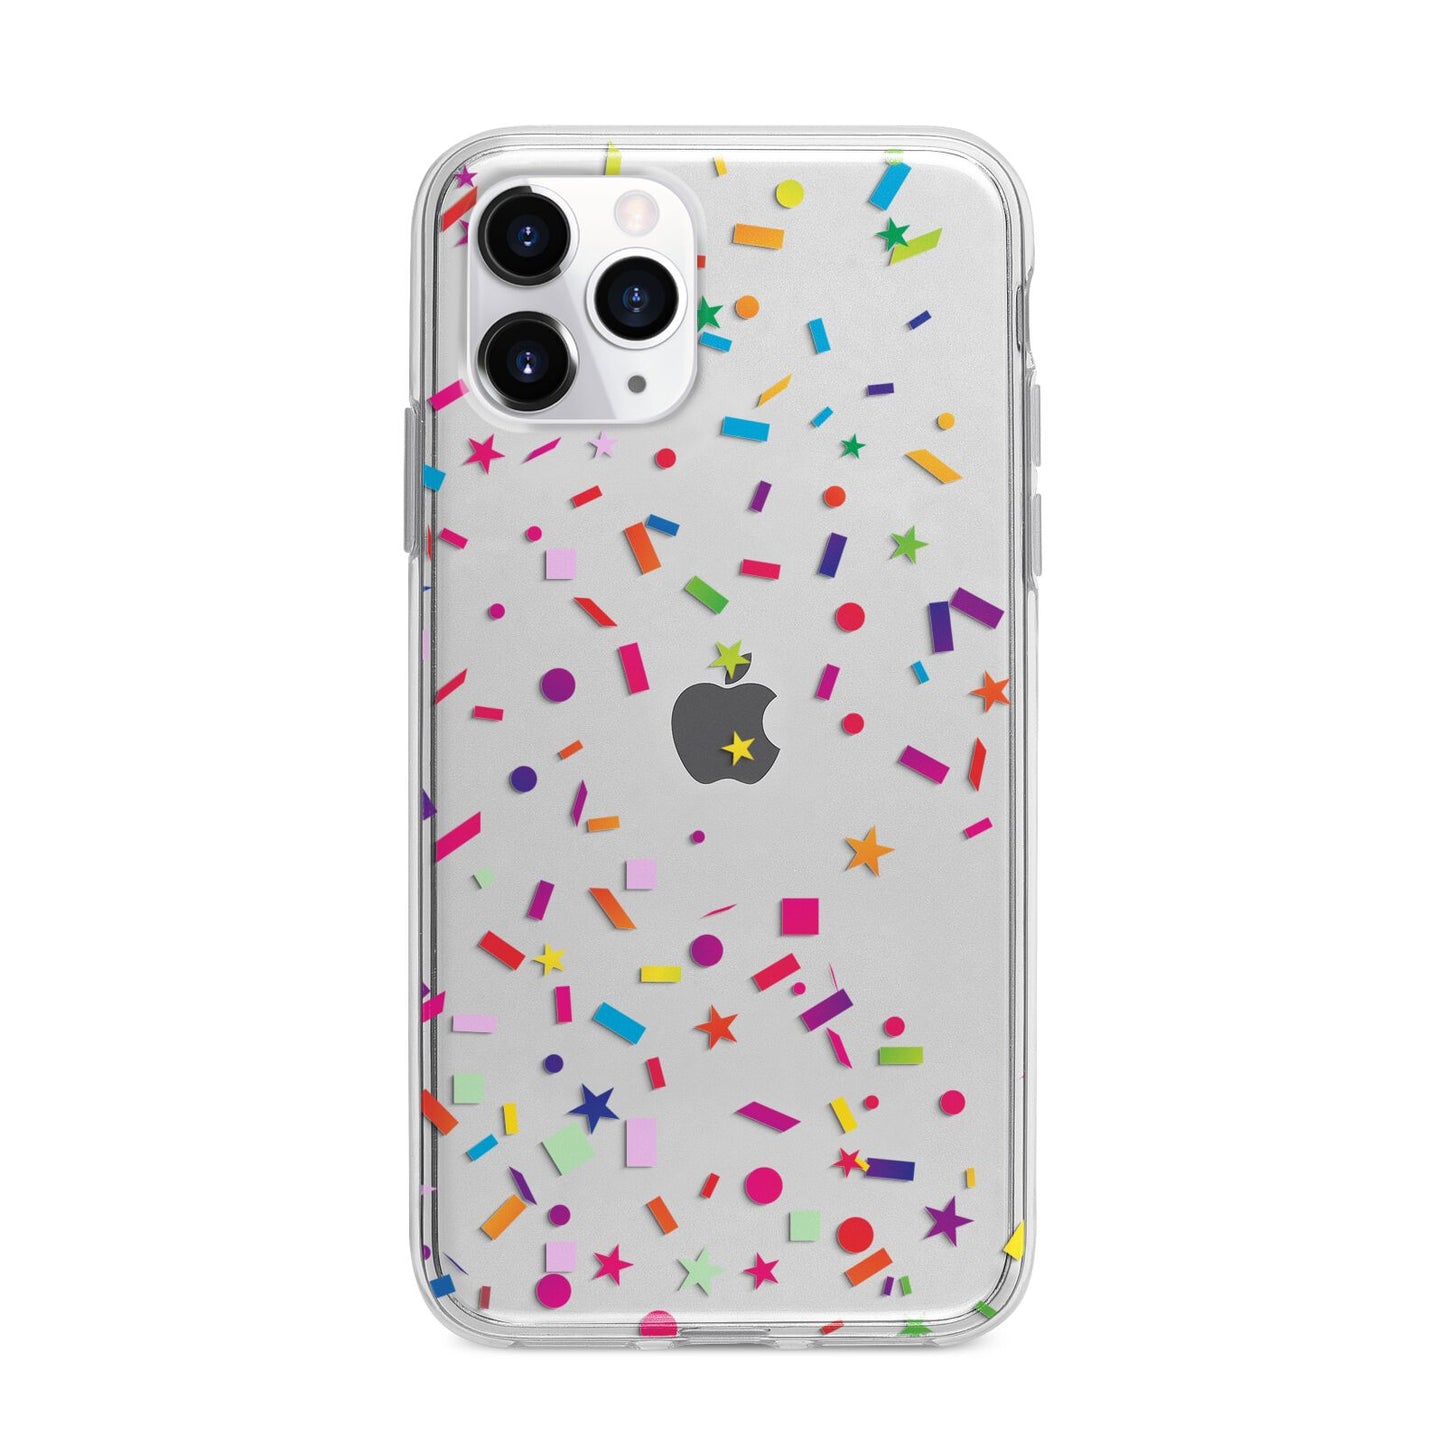 Confetti Apple iPhone 11 Pro in Silver with Bumper Case